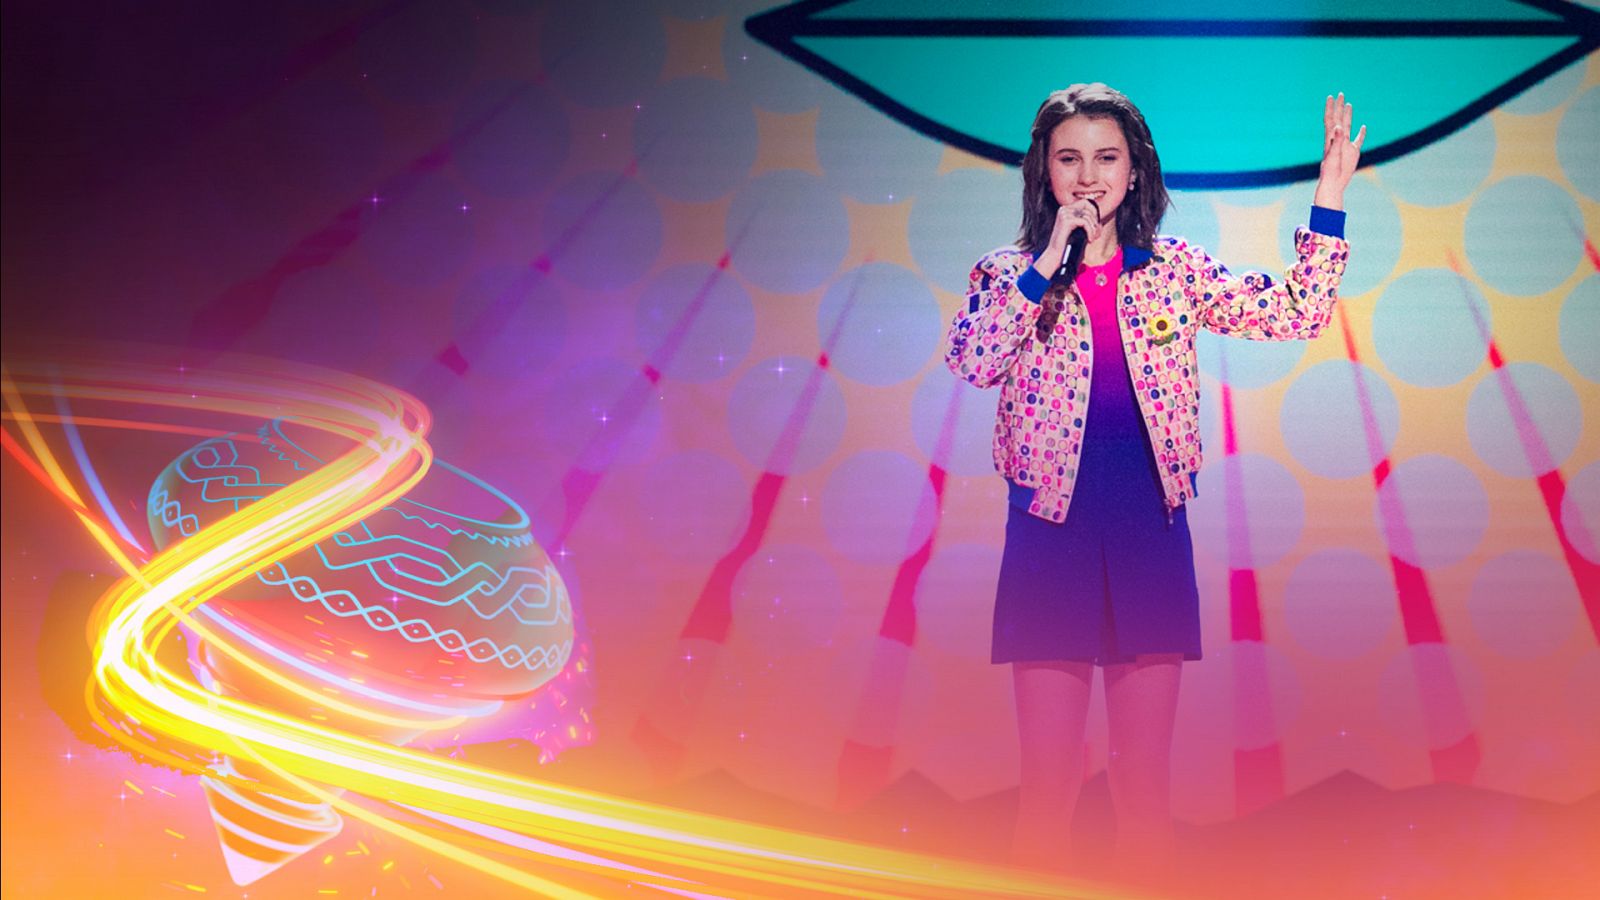 Eurovisión Junior 2022 - italia: Chanel canta "Bla bla bla" - Ver ahora